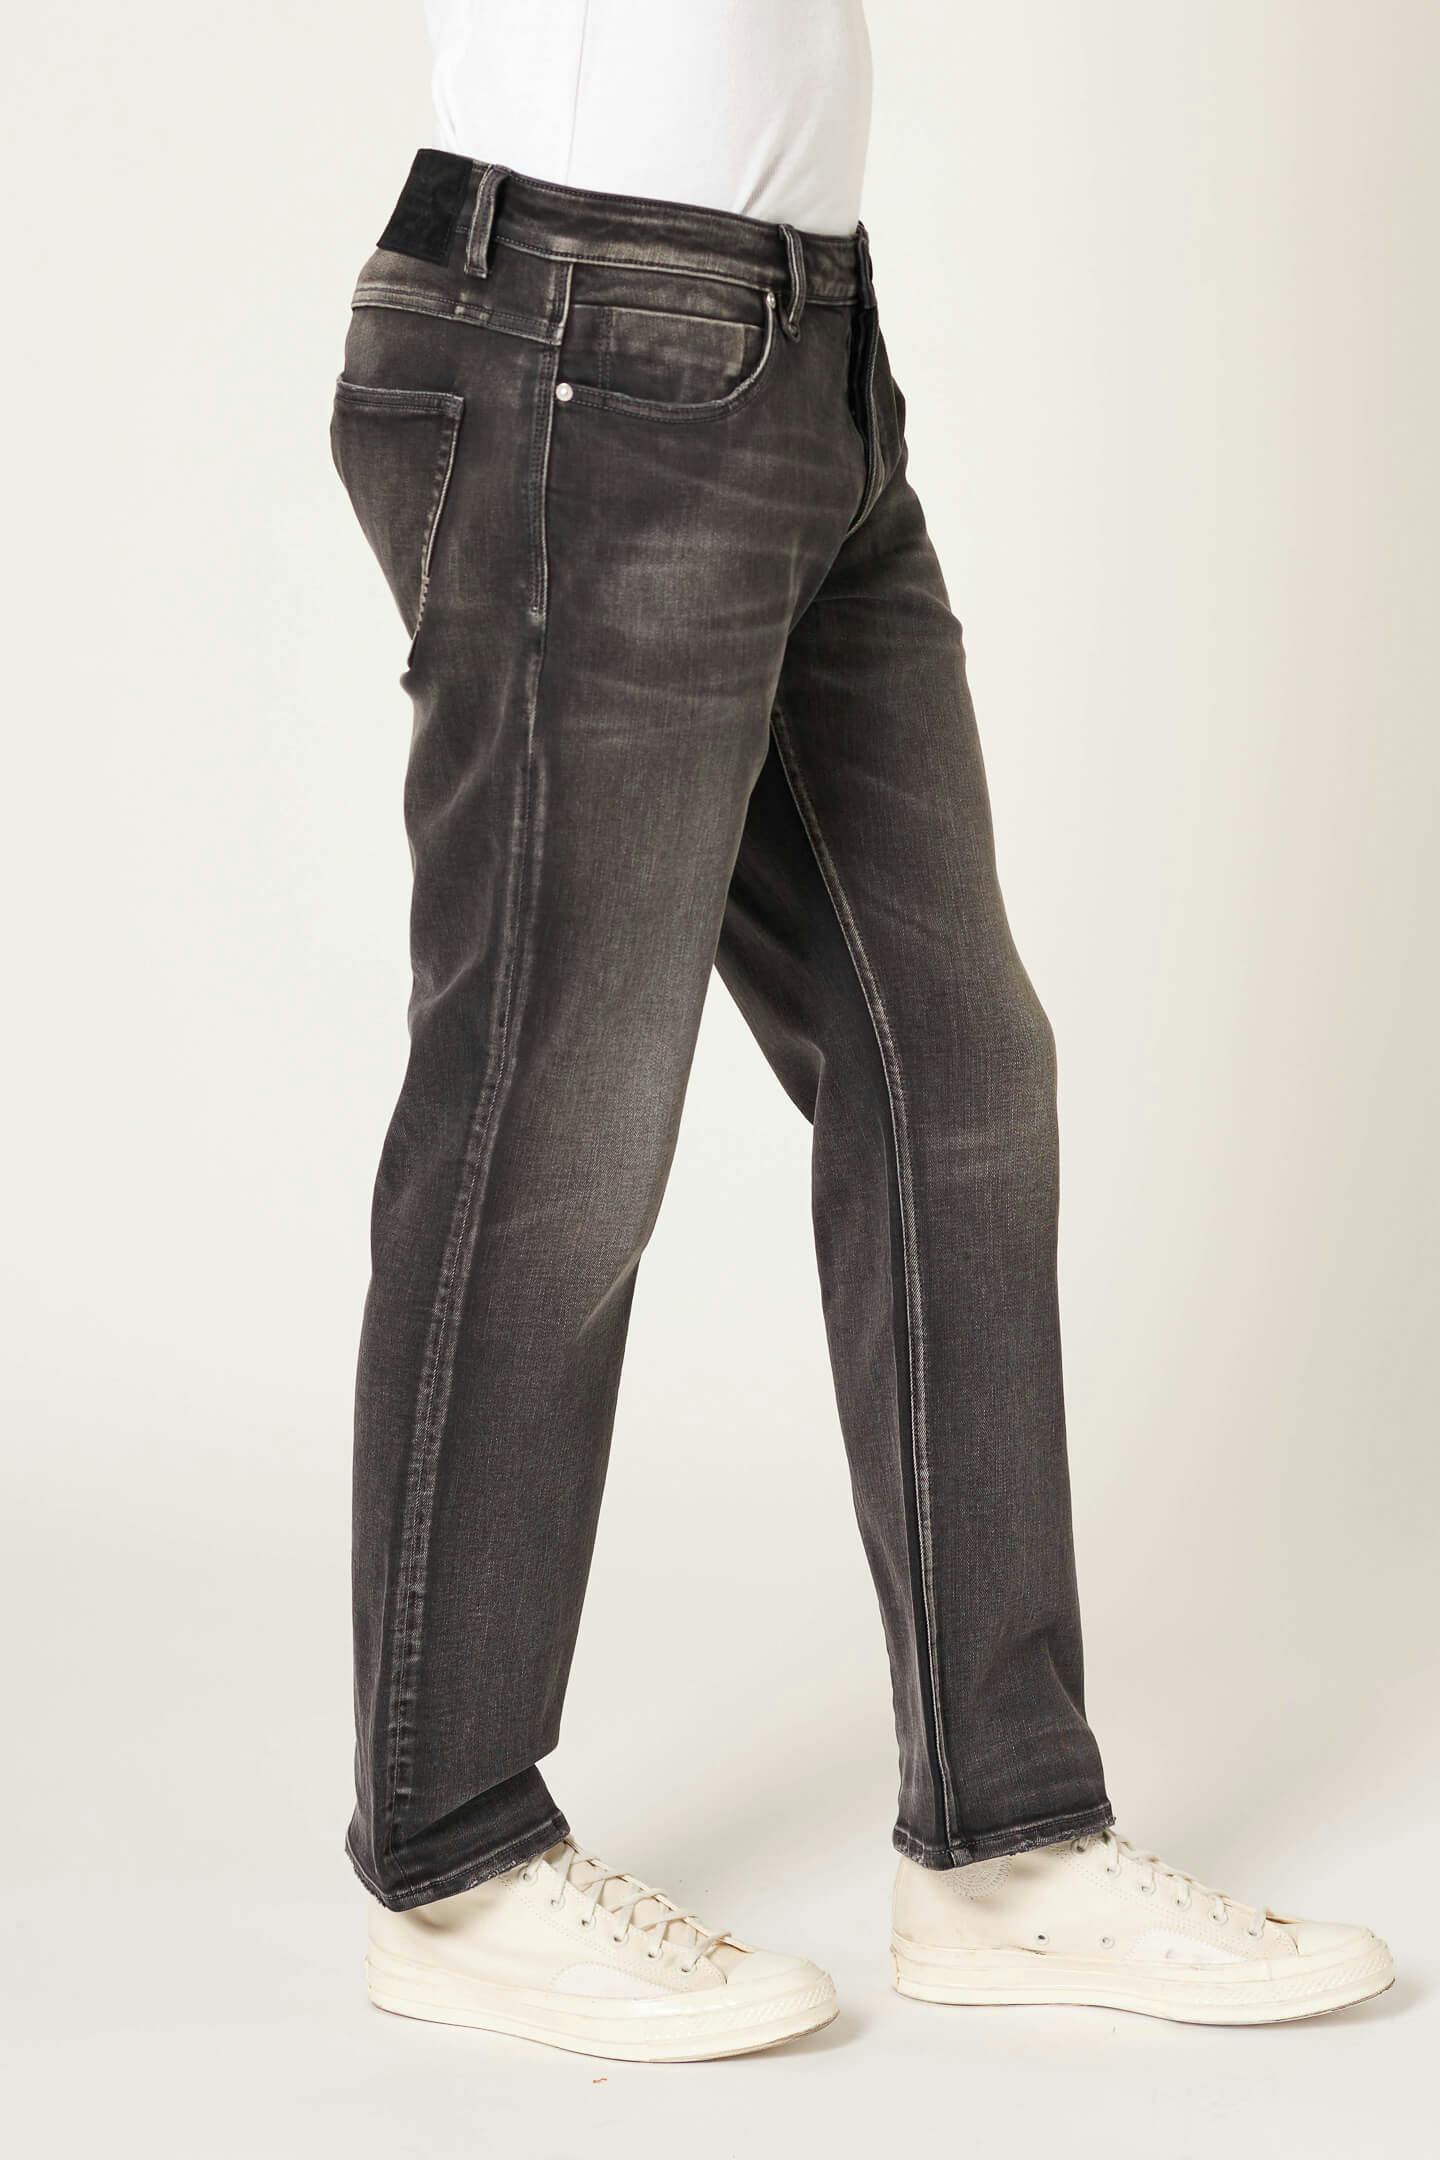 Lou Straight - Interzone Neuw dark grey mens-jeans 